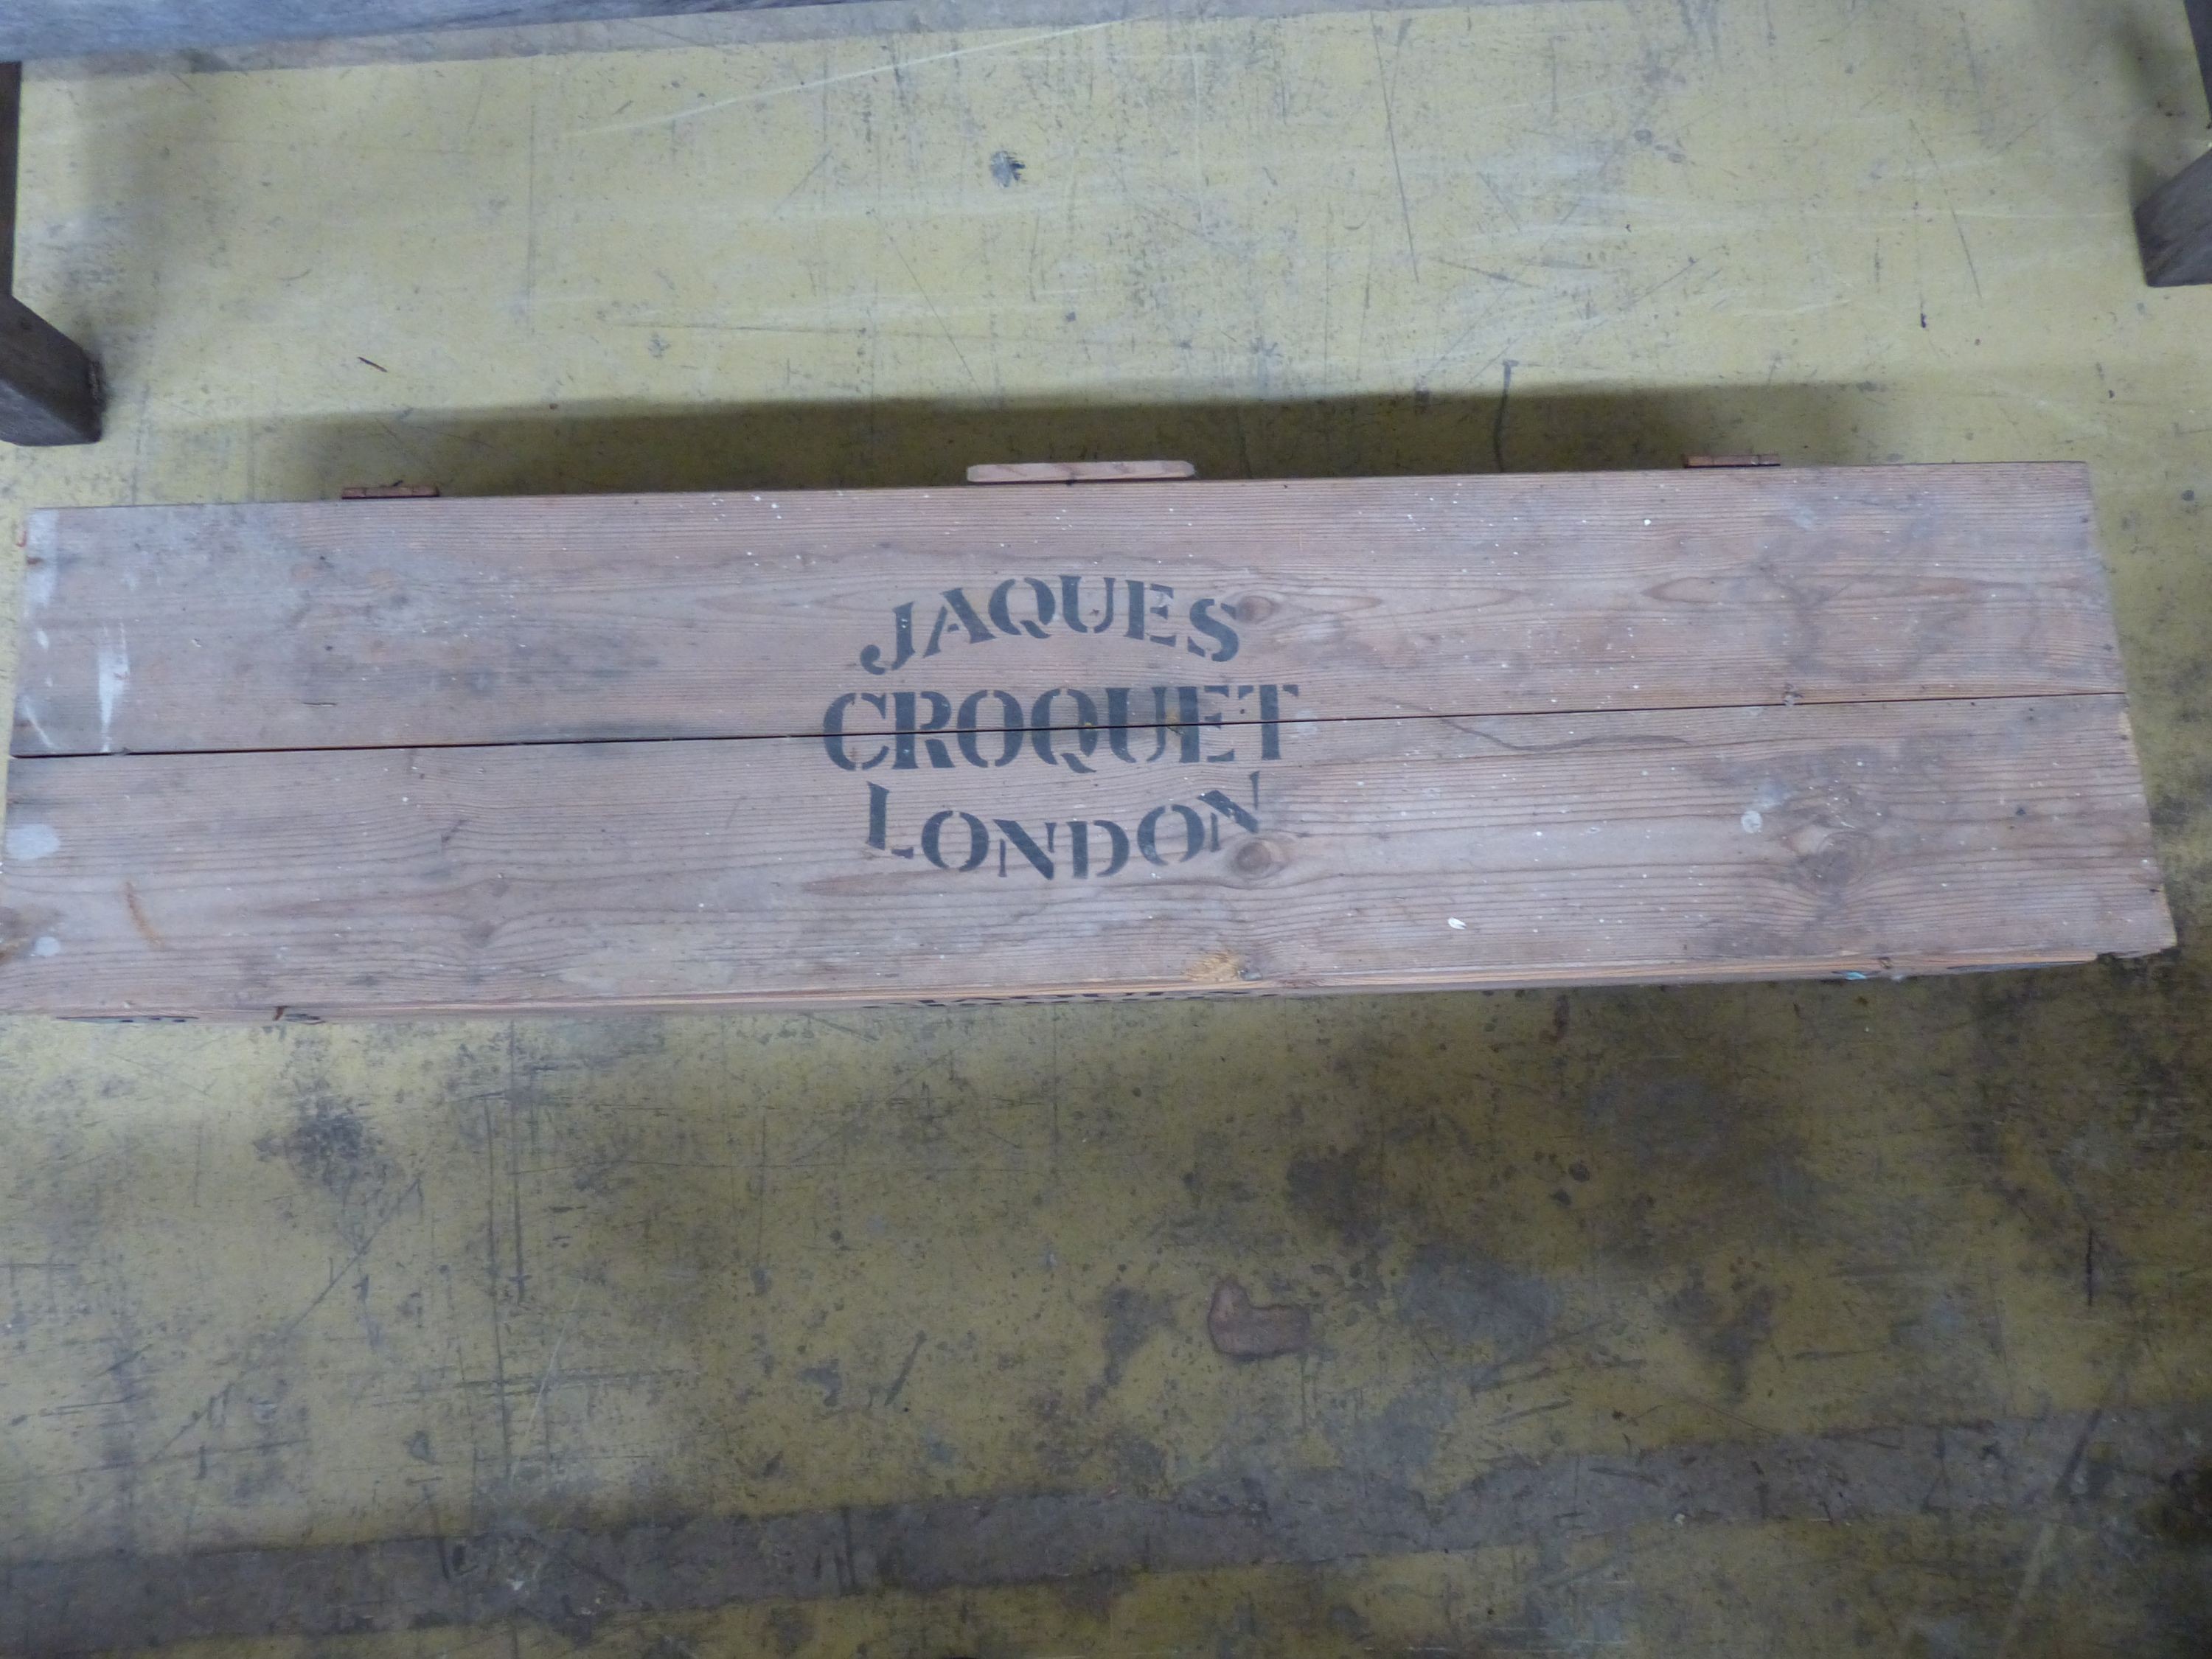 A Jacques Croquet set, pine cased